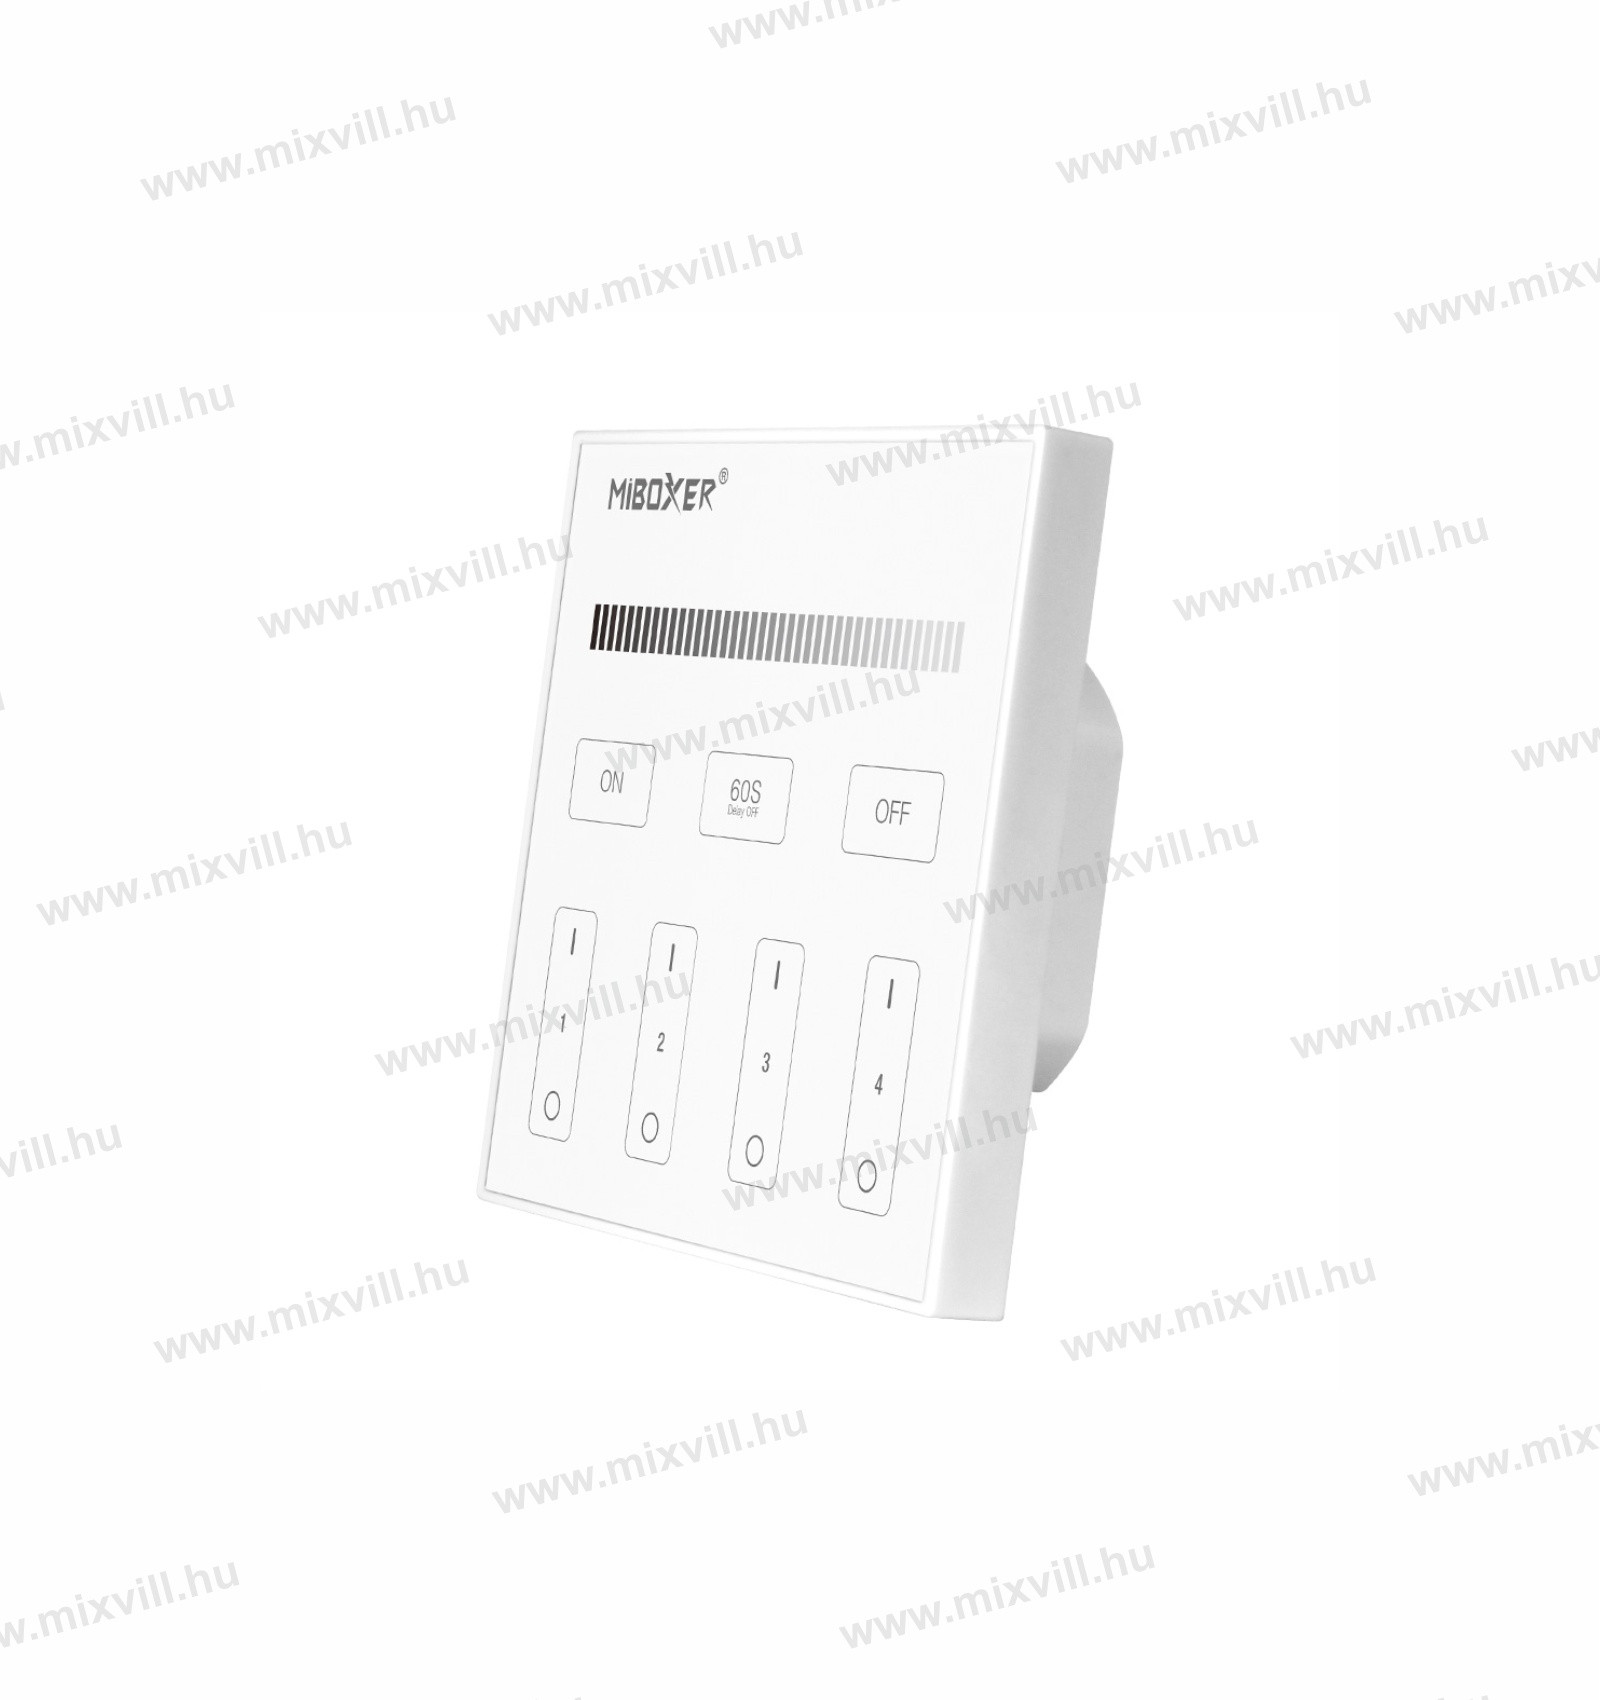 T1-MiBoxer-Group-Control-LED-csoport-zona-fali-taviranyito-DIM-fali-panel